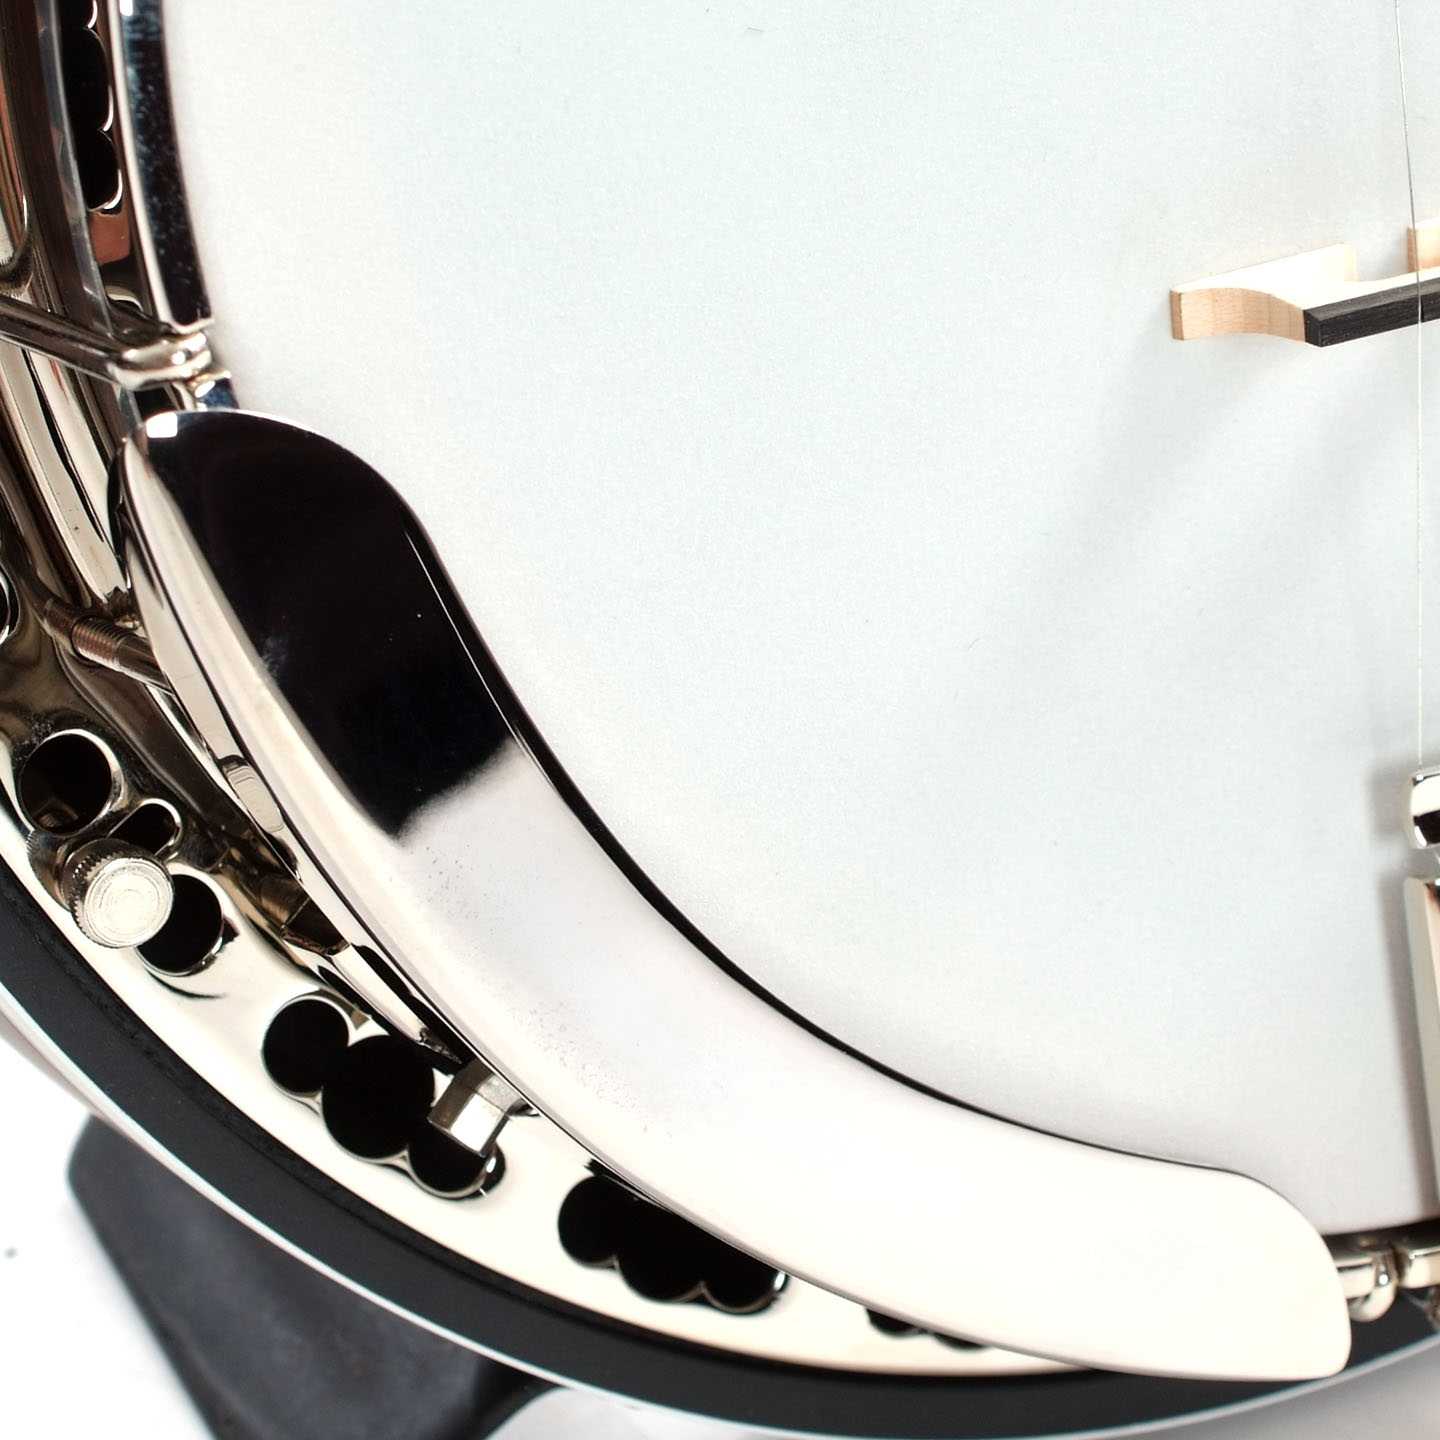 Image 3 of Deering John Hartford Banjo & Case - SKU# HARTFORD : Product Type Resonator Back Banjos : Elderly Instruments